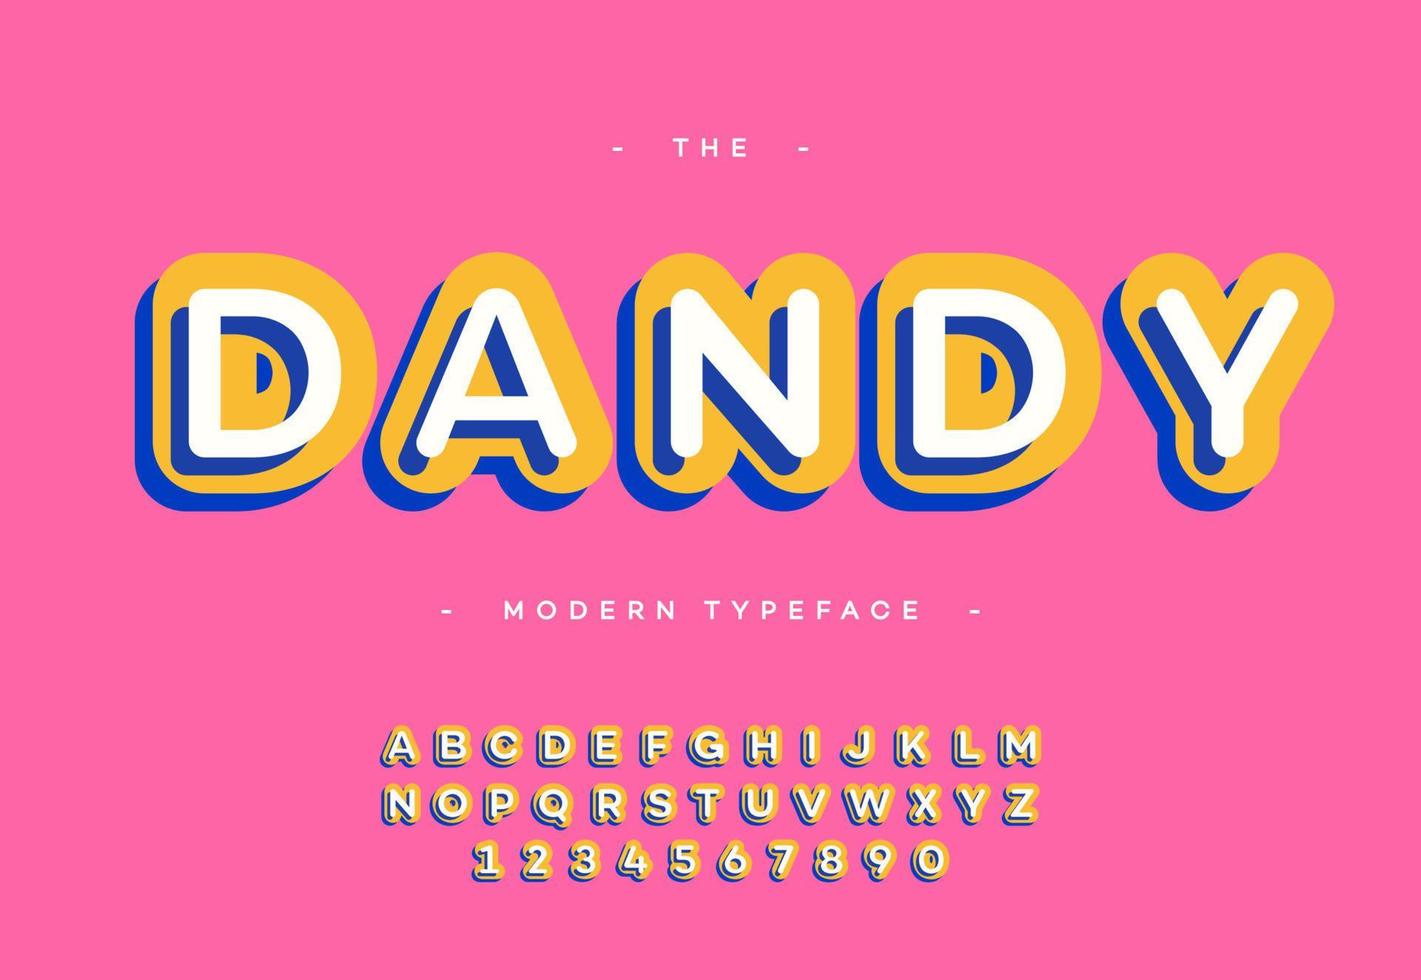 Vektor-Dandy-Schriftart 3d Fett Typografie serifenlos bunter Stil vektor